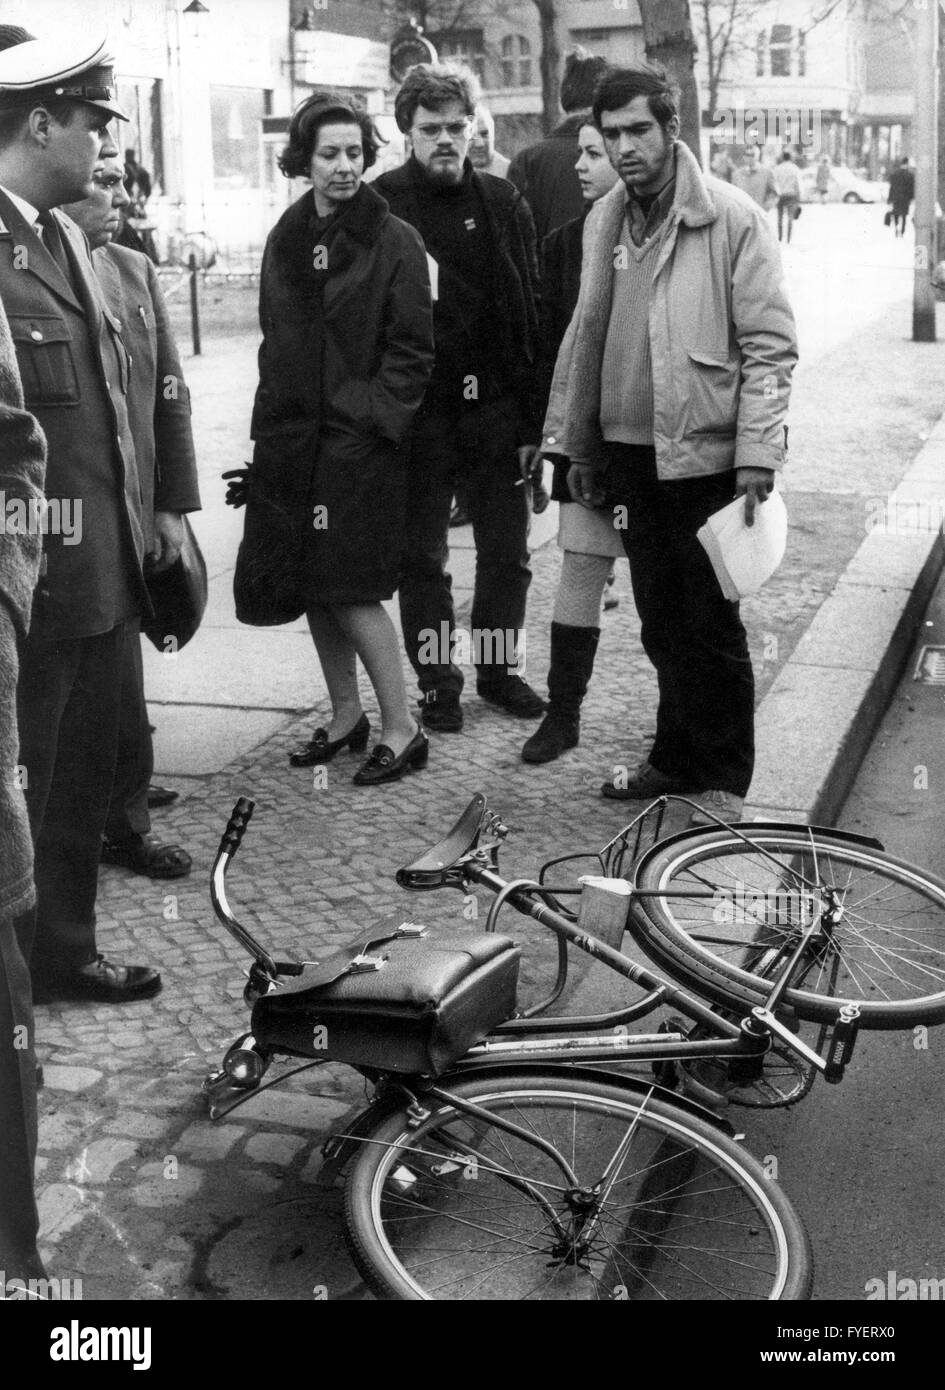 La location de Rudi Dutschke sur les lieux. Rudi Dutschke - porte-parole du mouvement étudiant allemand - a reçu une balle dans la tête le 11 avril 1968 sur Kurfuerstendamm à Berlin par antii-communiste Josef Erwin Bachmann. Dutschke a survécu à la tentative. Banque D'Images